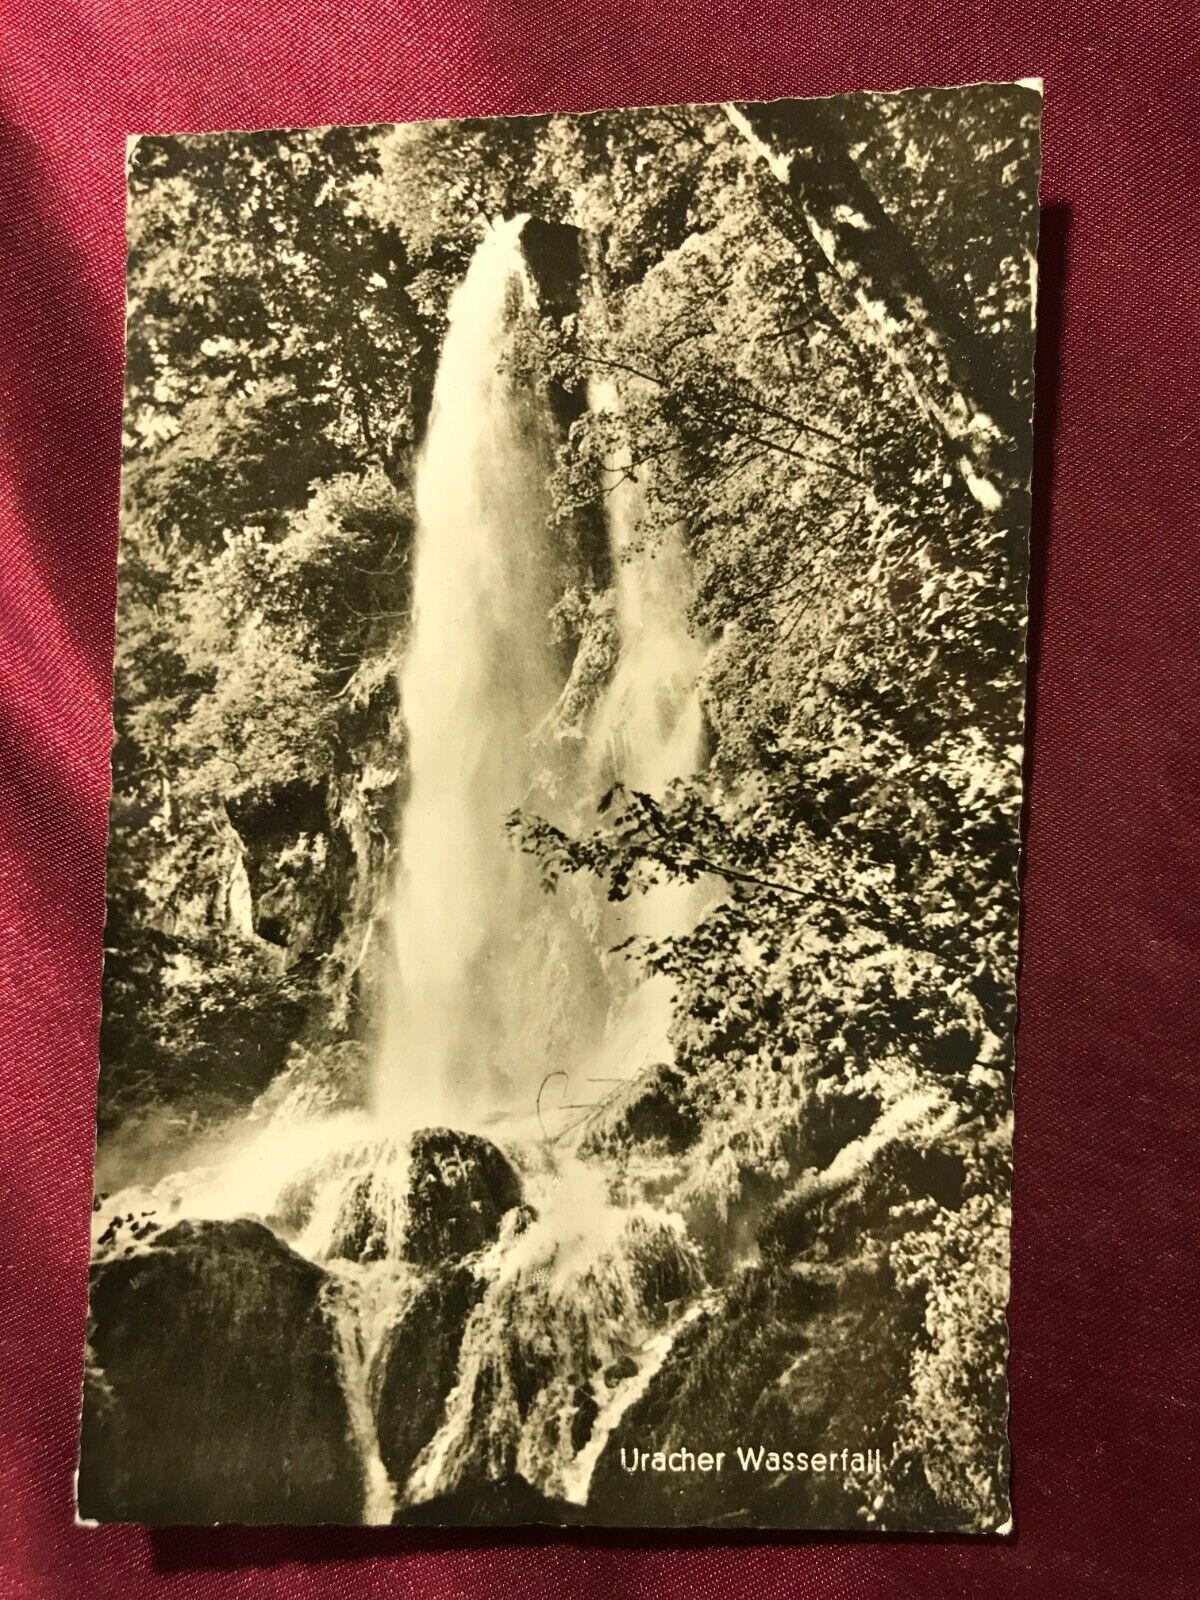 ca. 1960 BAD URACH-Uracher Wasserfall-Franckh Verlag 21603/150b-ungel.-AK-15